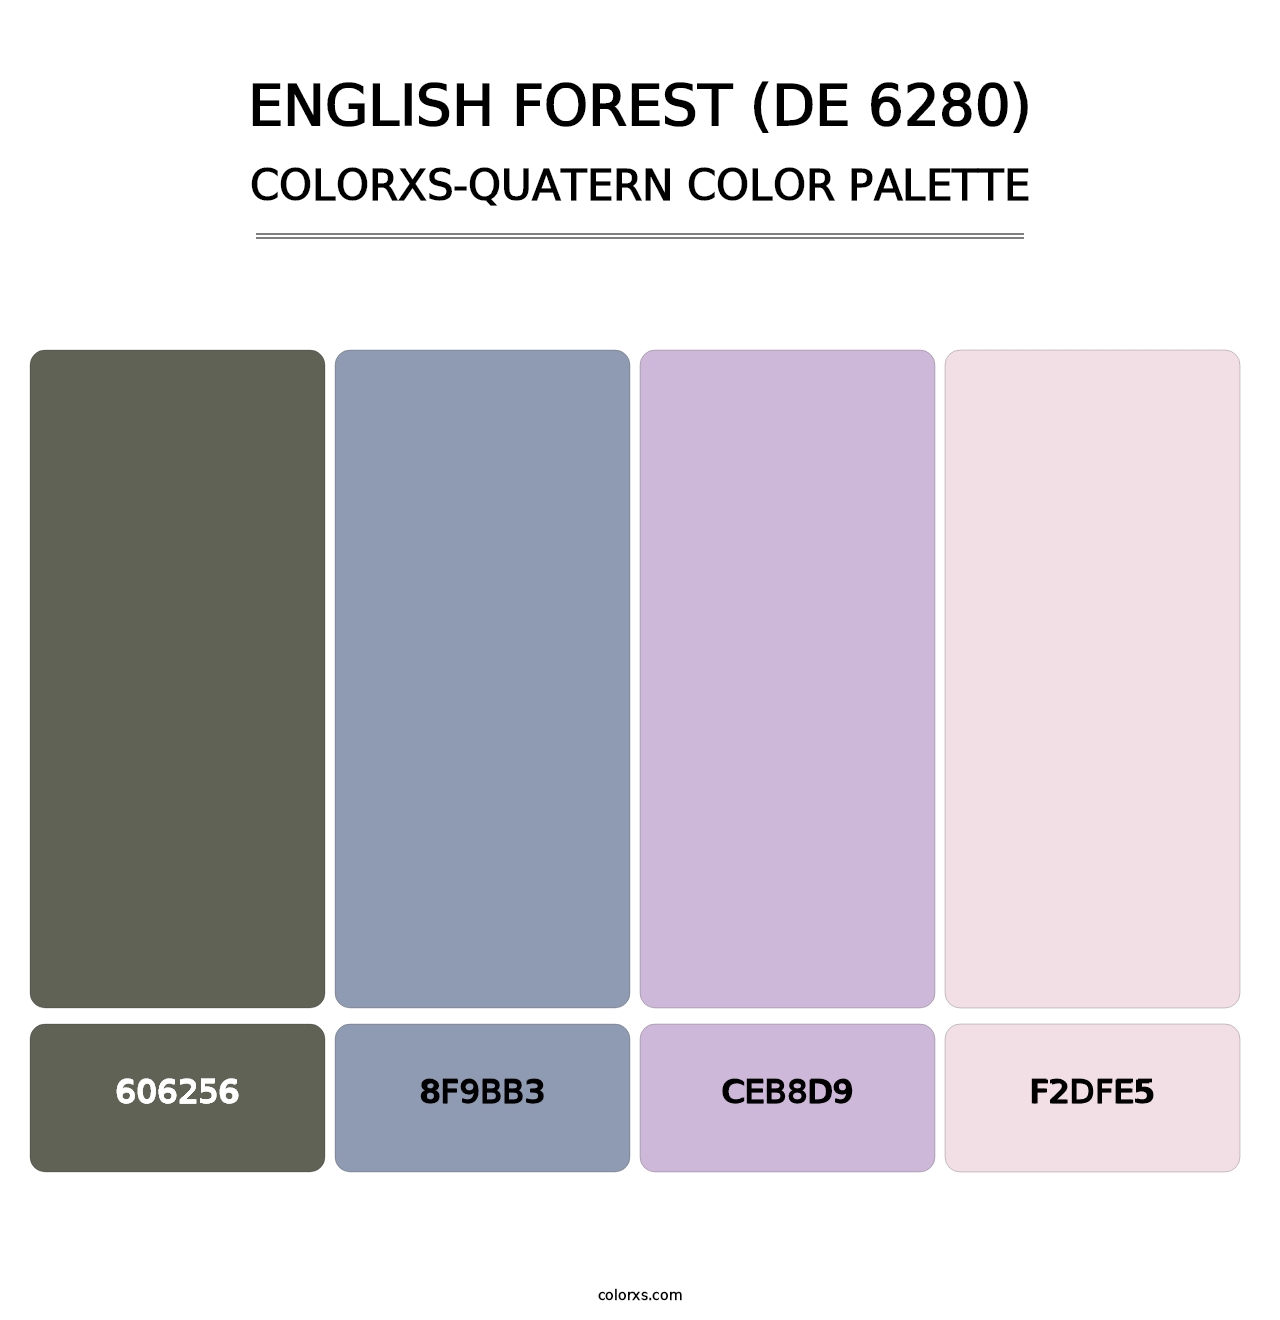 English Forest (DE 6280) - Colorxs Quatern Palette